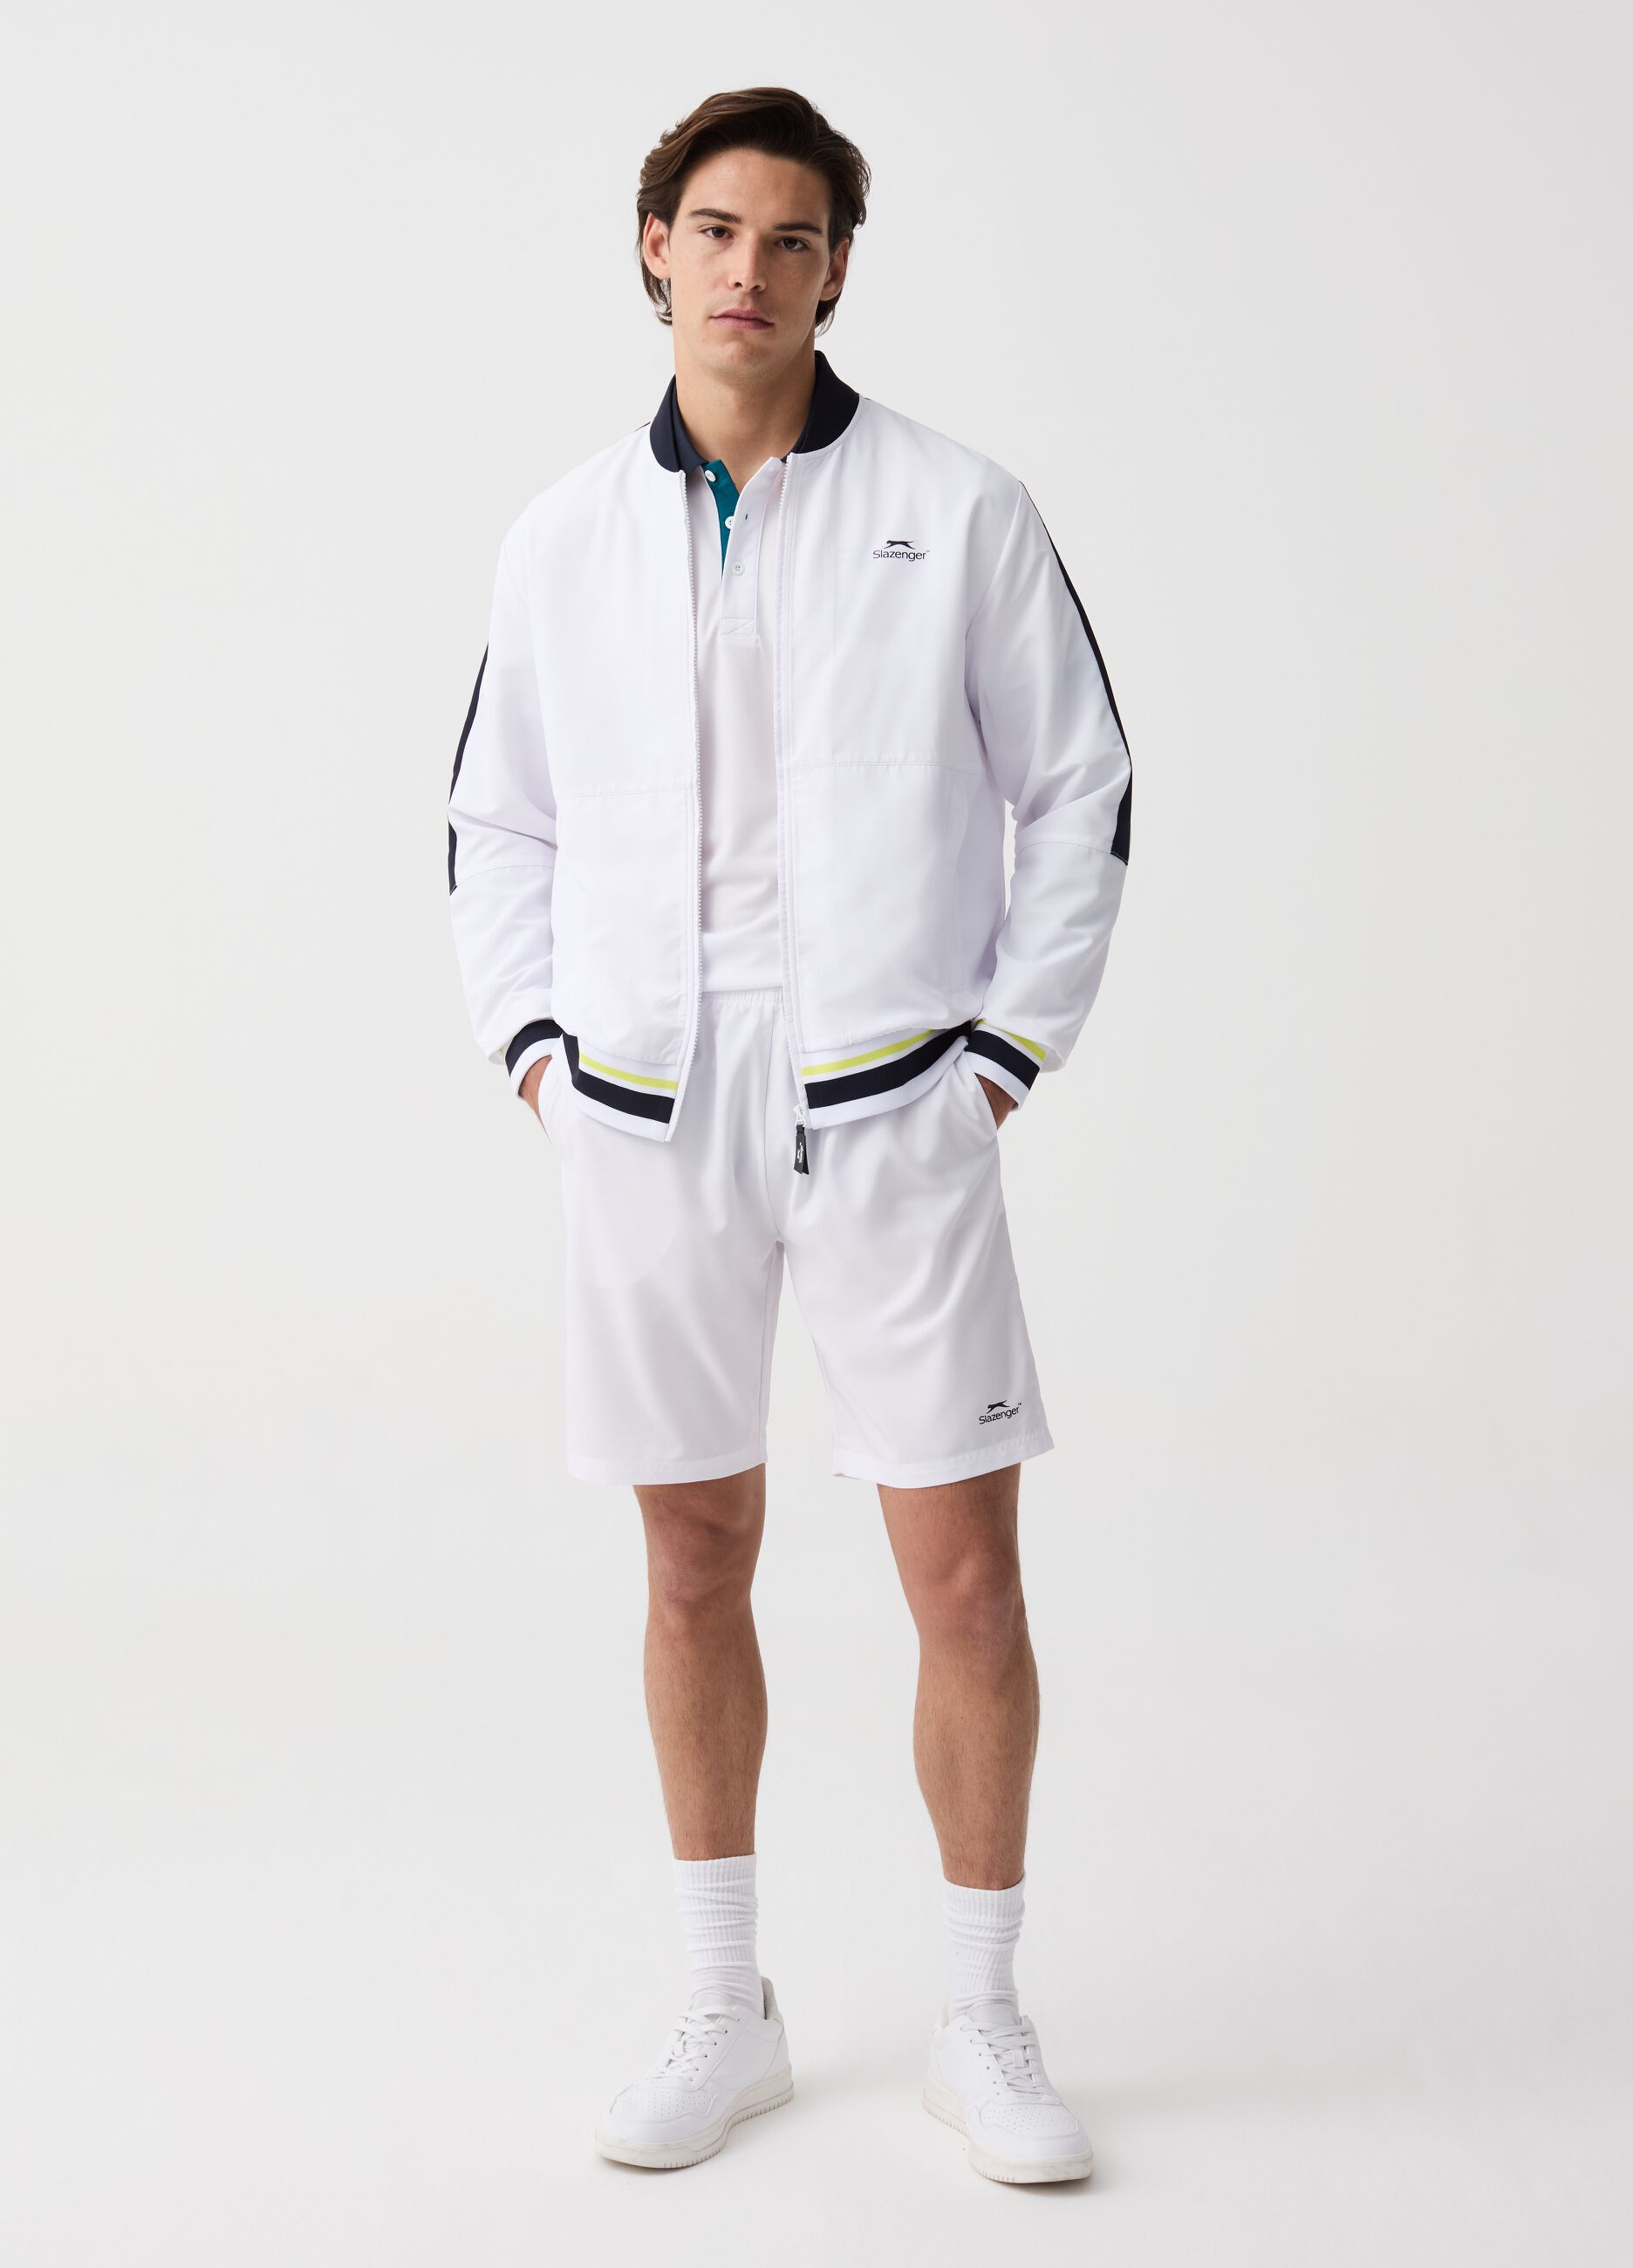 Slazenger quick-dry full-zip tennis sweatshirt